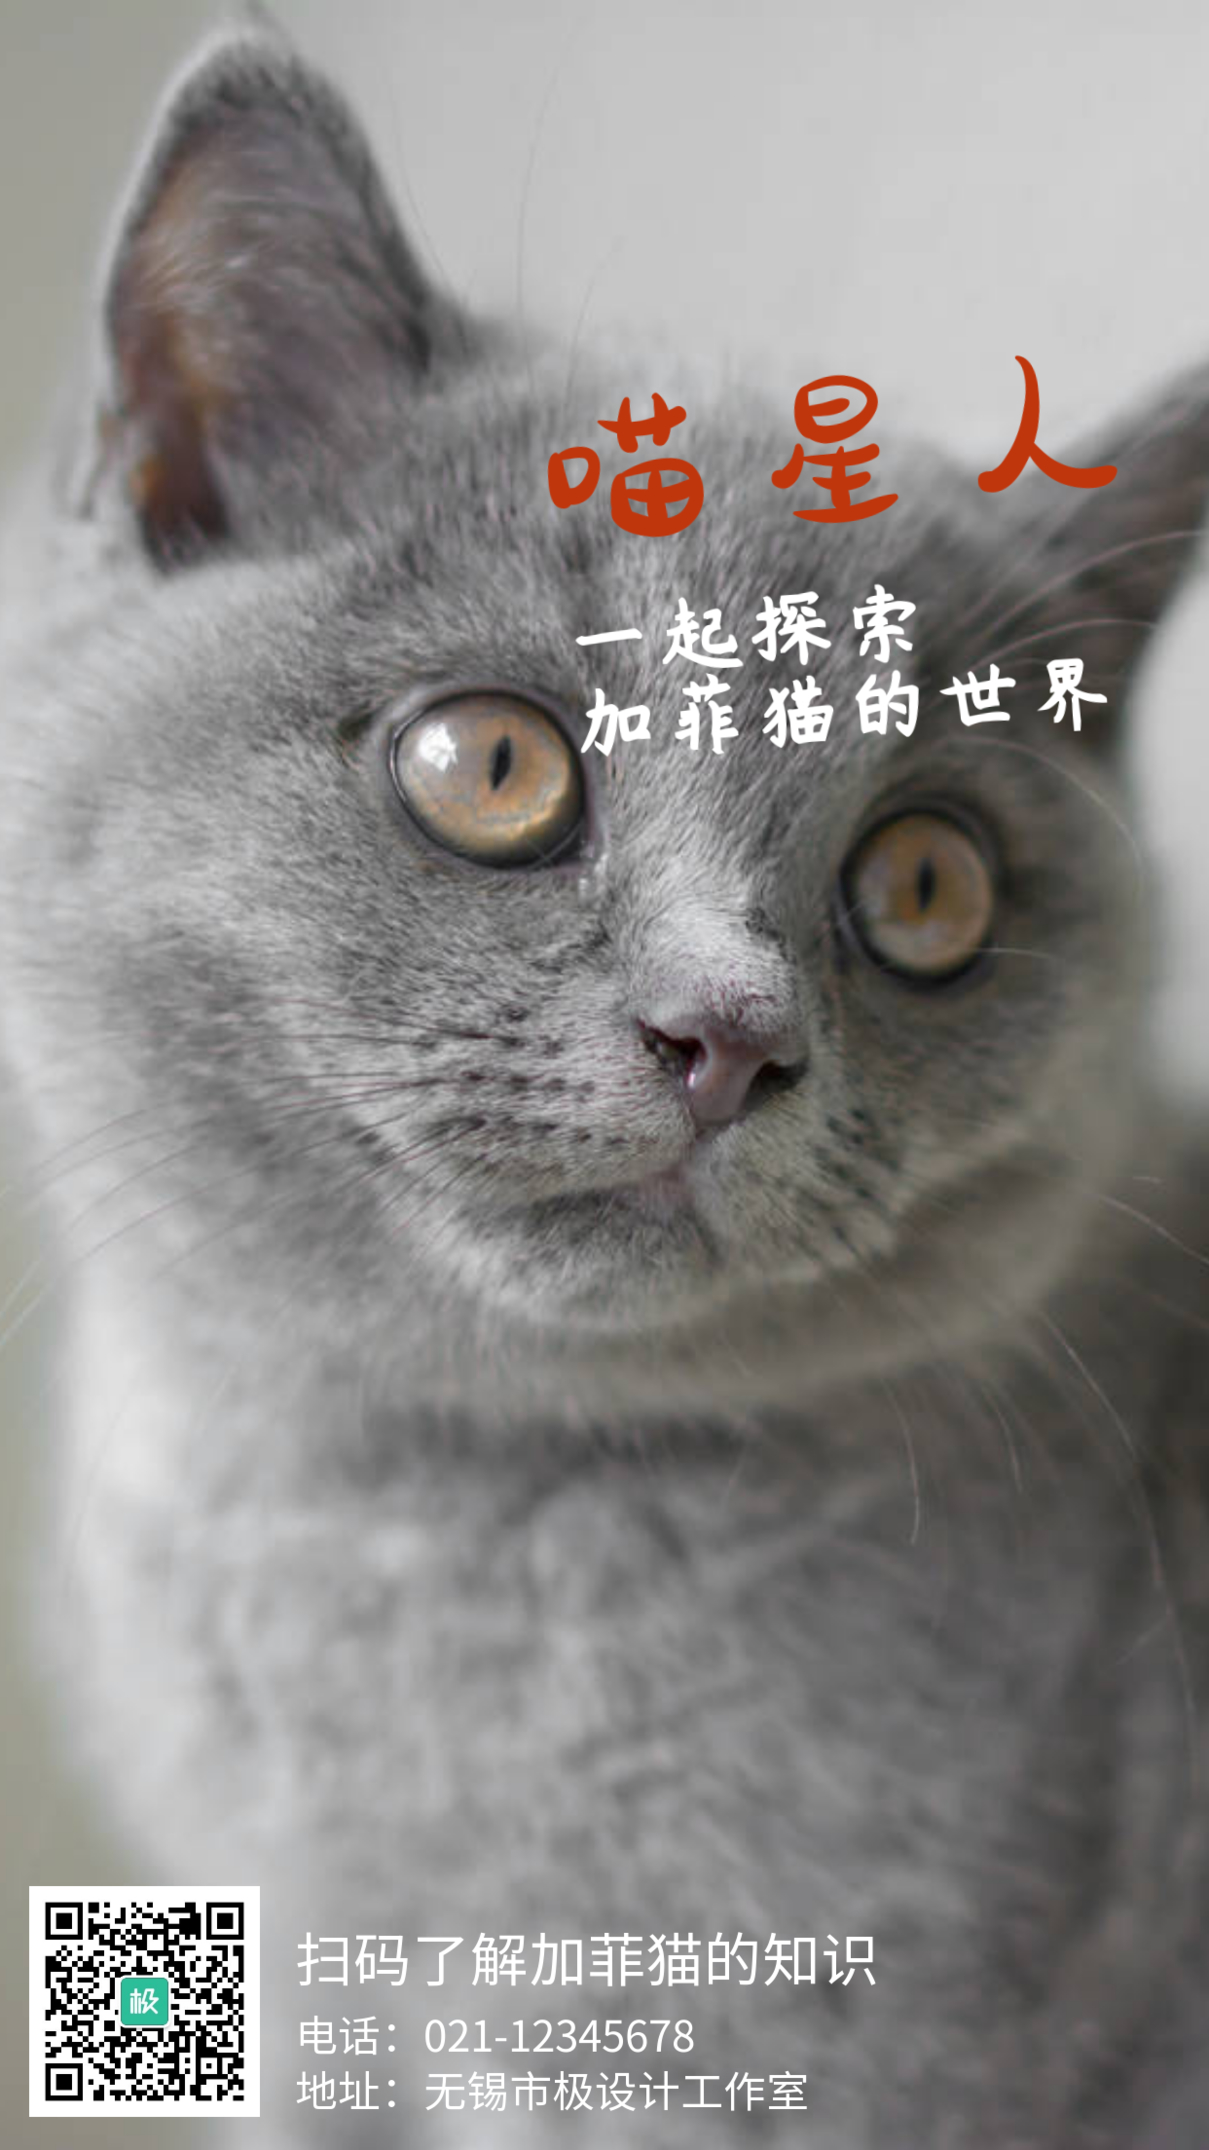 可爱喵星人加菲猫宠物手机海报